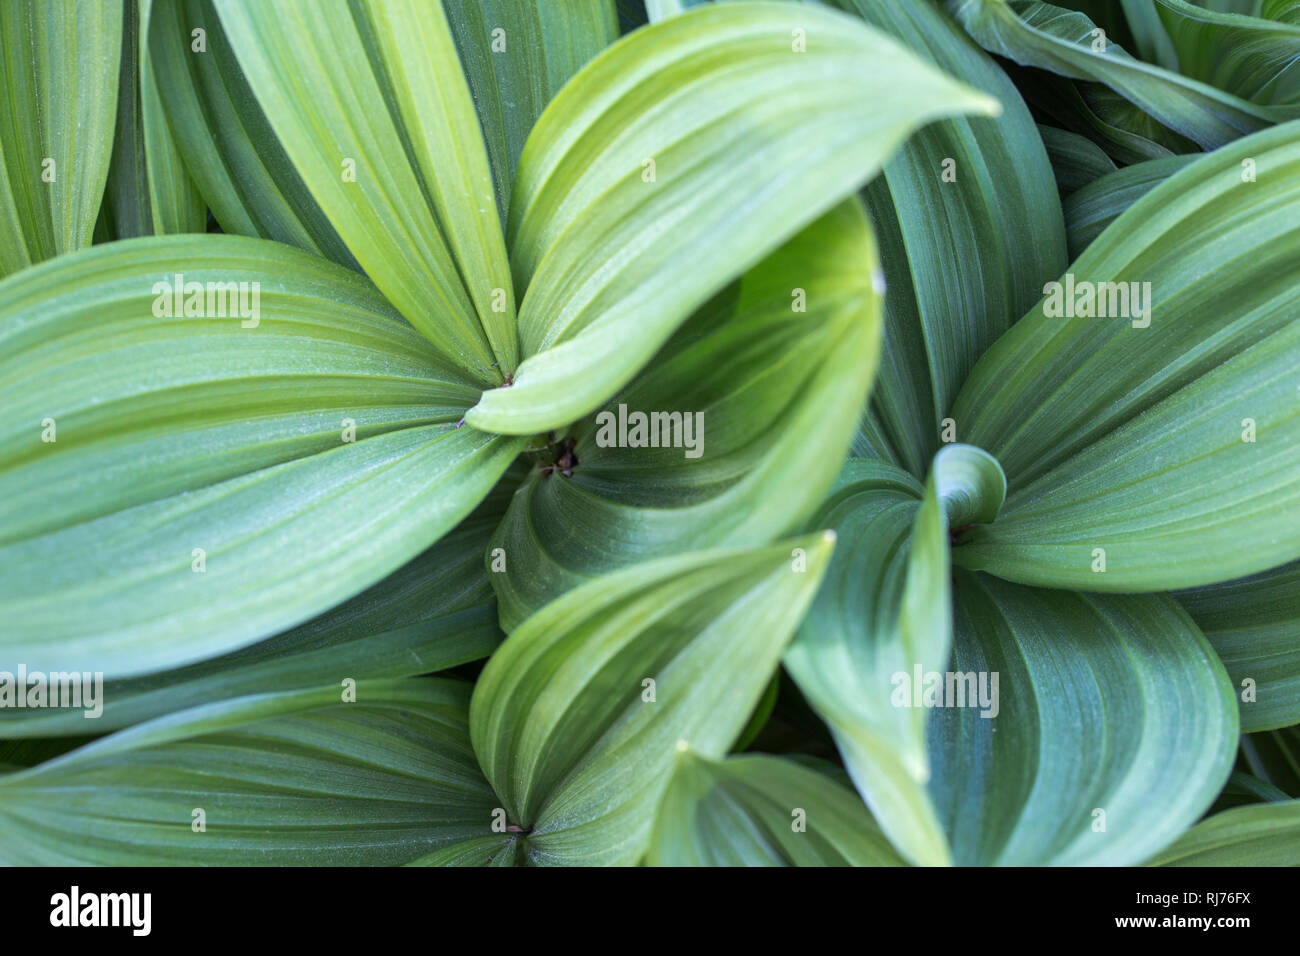 Zierpflanze, gestreifte Blätter in unterschiedlichen Grüntönen, Muster, Hintergrund, Stock Photo